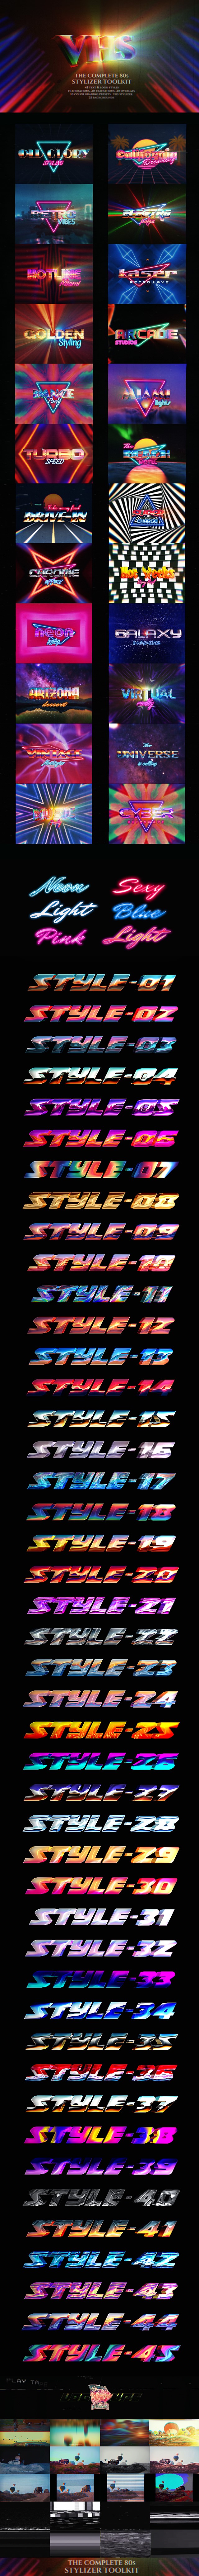 80年代蒸汽波风复古霓虹灯氛围VHS叠加视频素材包+文本工具AE模版 the-complete-80s-stylizer-toolkit 影视音频 第1张